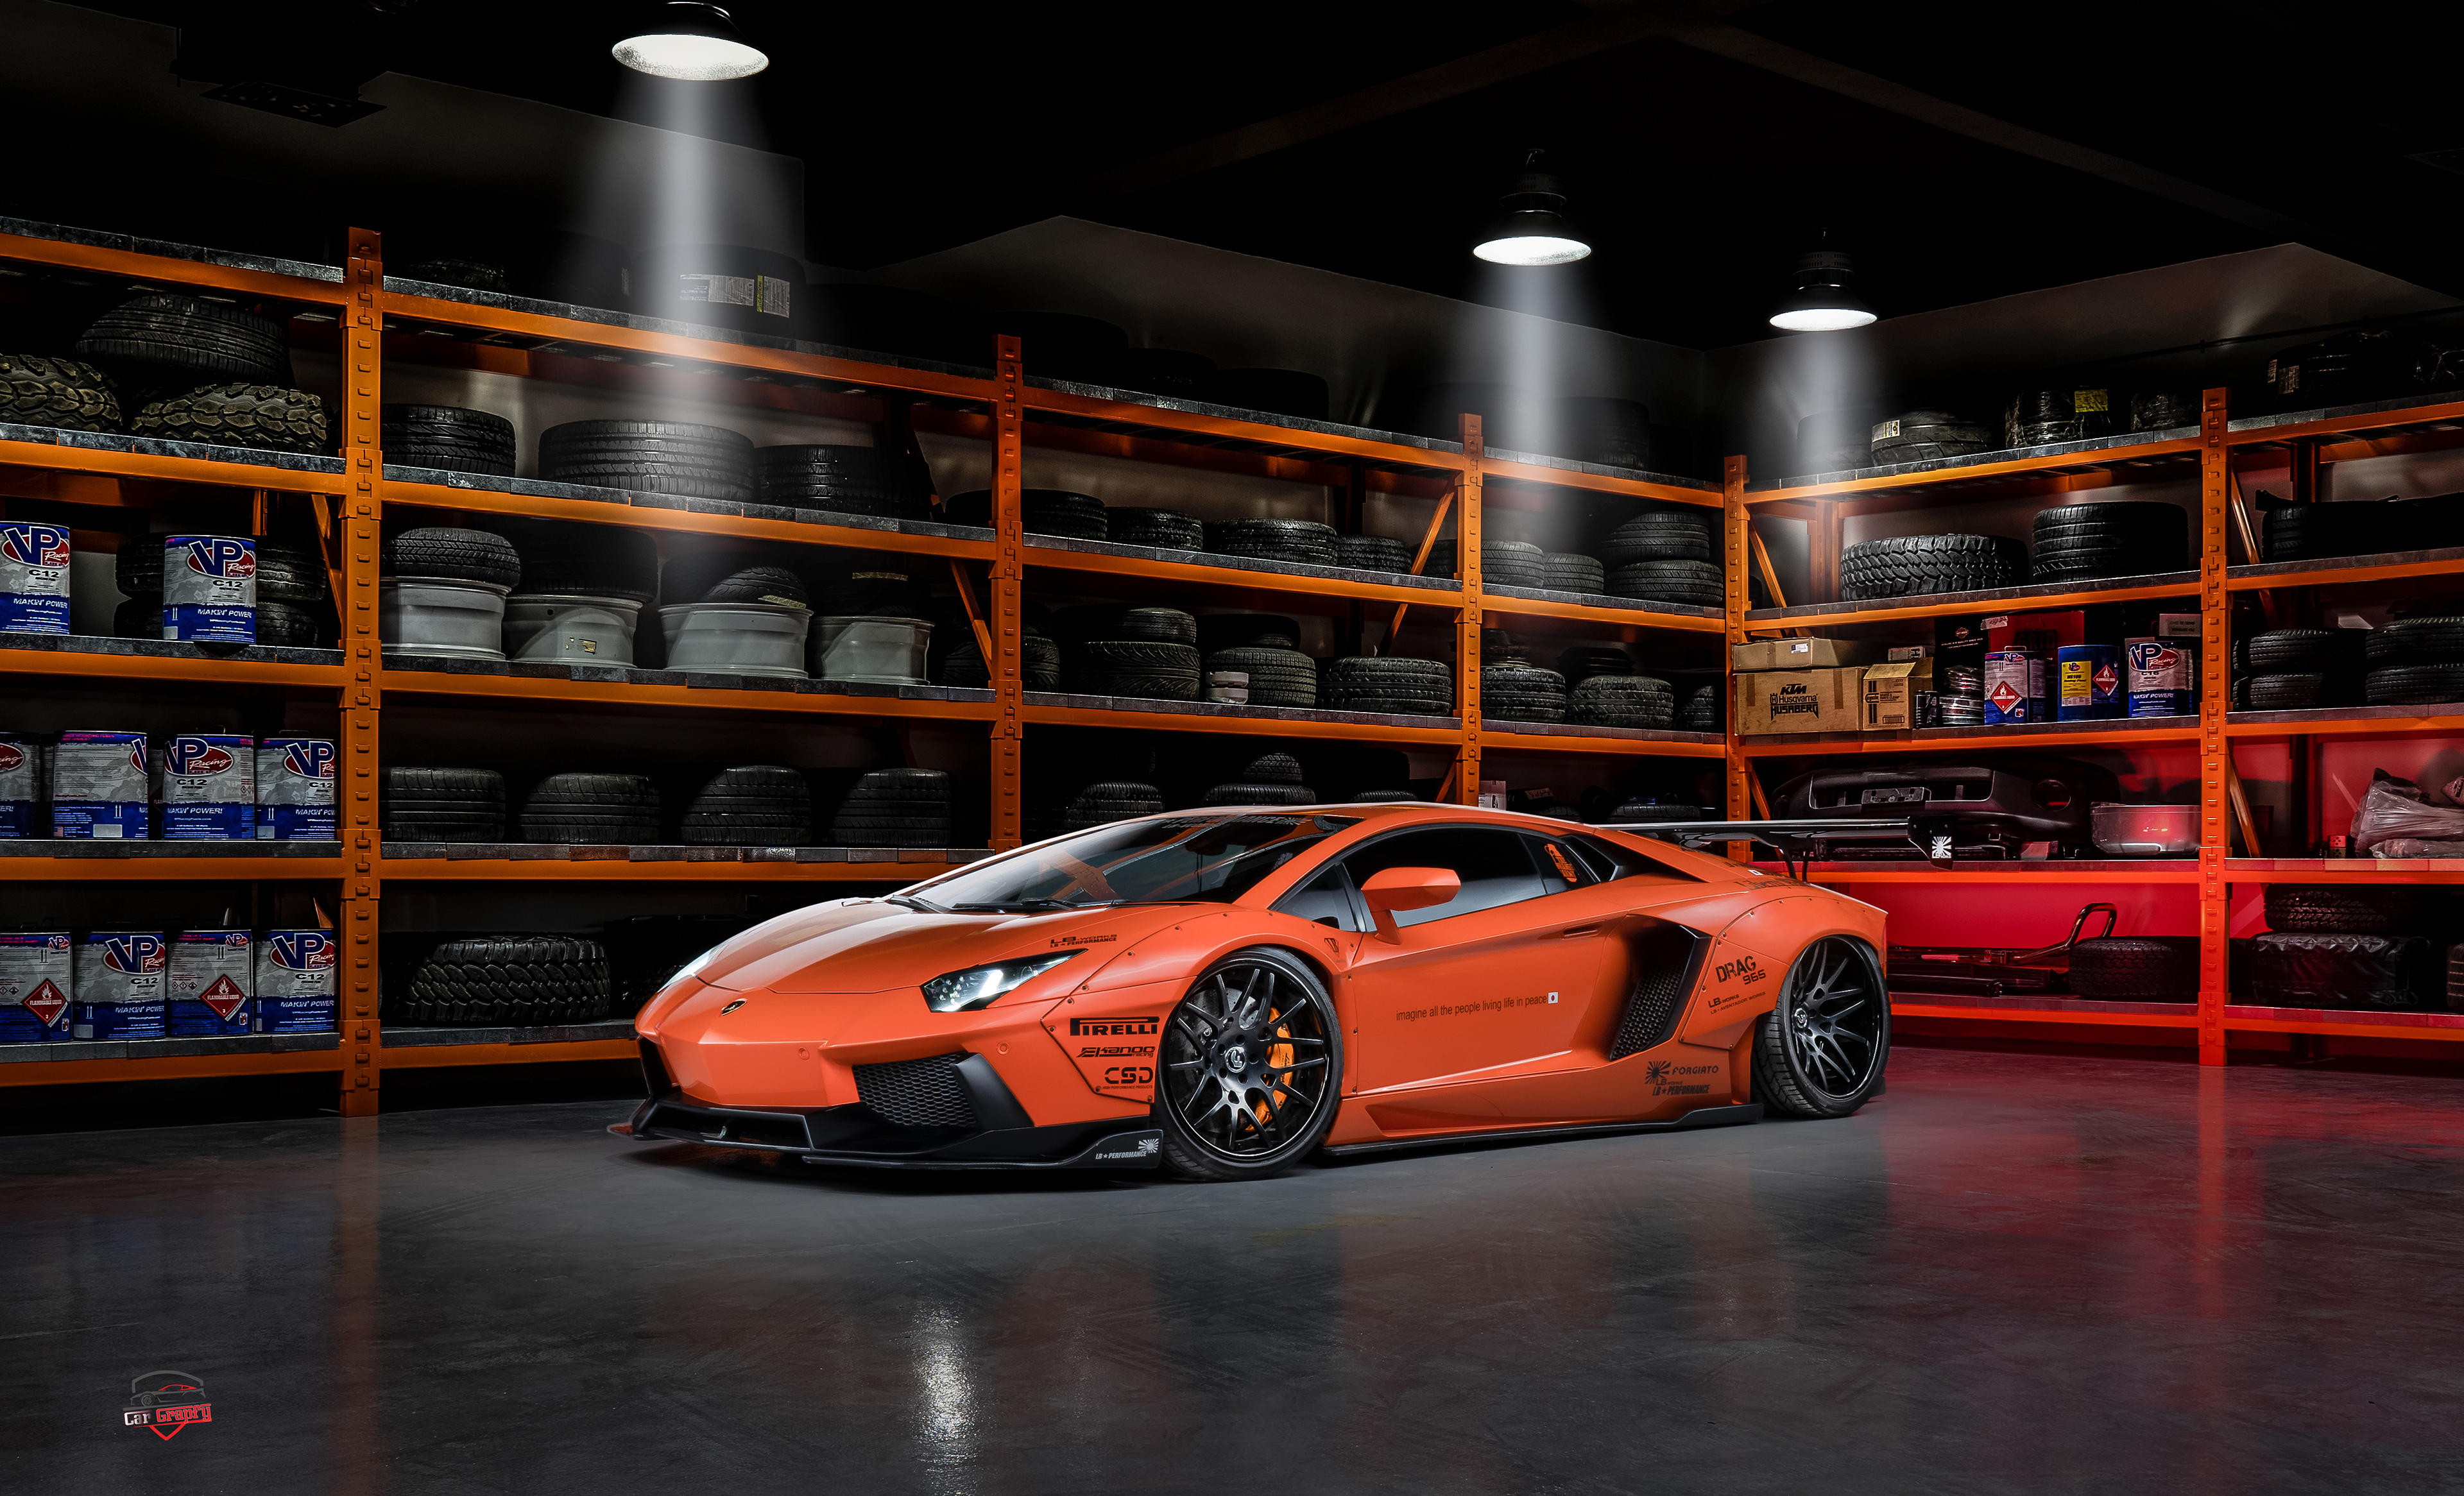 Free photo Orange Lamborghini Huracan in a big garage